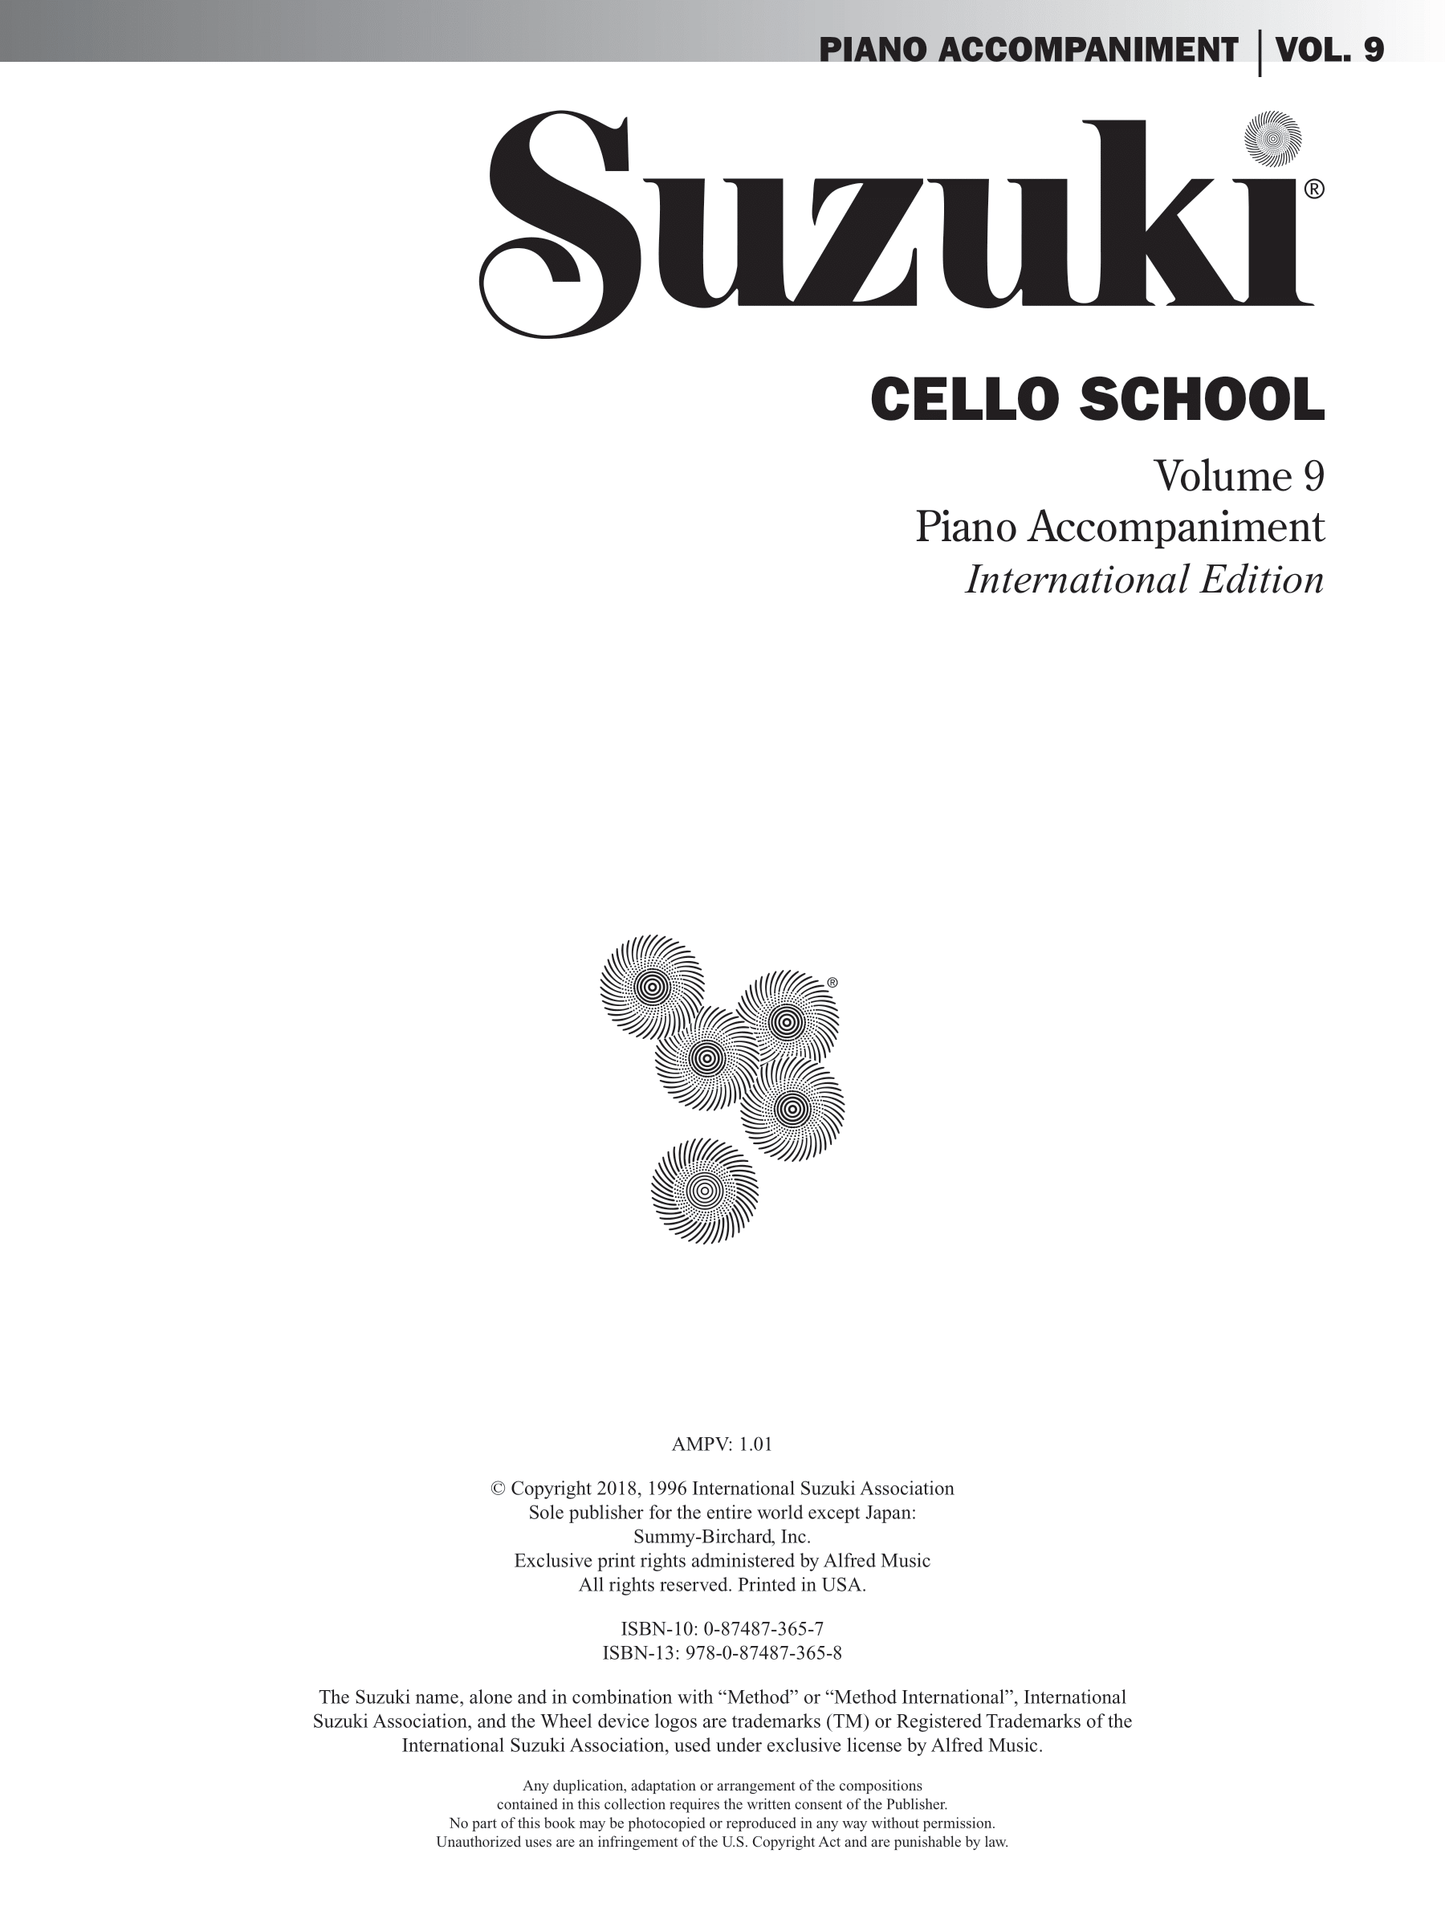 Suzuki Cello School - Volume 9 Cello Part Book with Piano Accompaniment